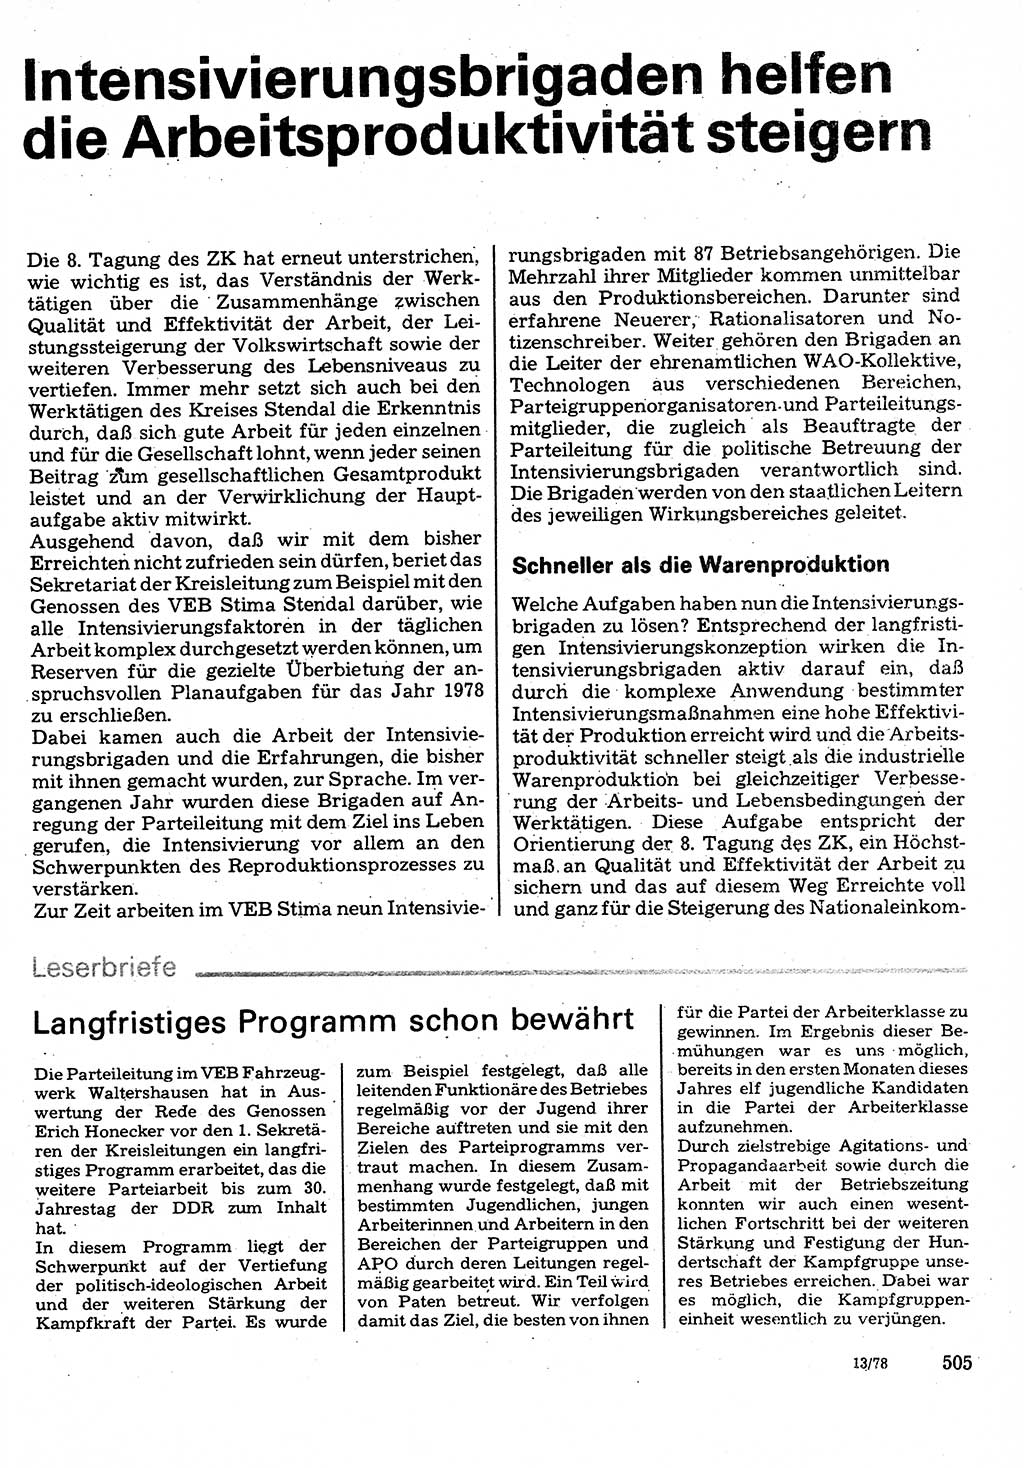 Neuer Weg (NW), Organ des Zentralkomitees (ZK) der SED (Sozialistische Einheitspartei Deutschlands) für Fragen des Parteilebens, 33. Jahrgang [Deutsche Demokratische Republik (DDR)] 1978, Seite 505 (NW ZK SED DDR 1978, S. 505)